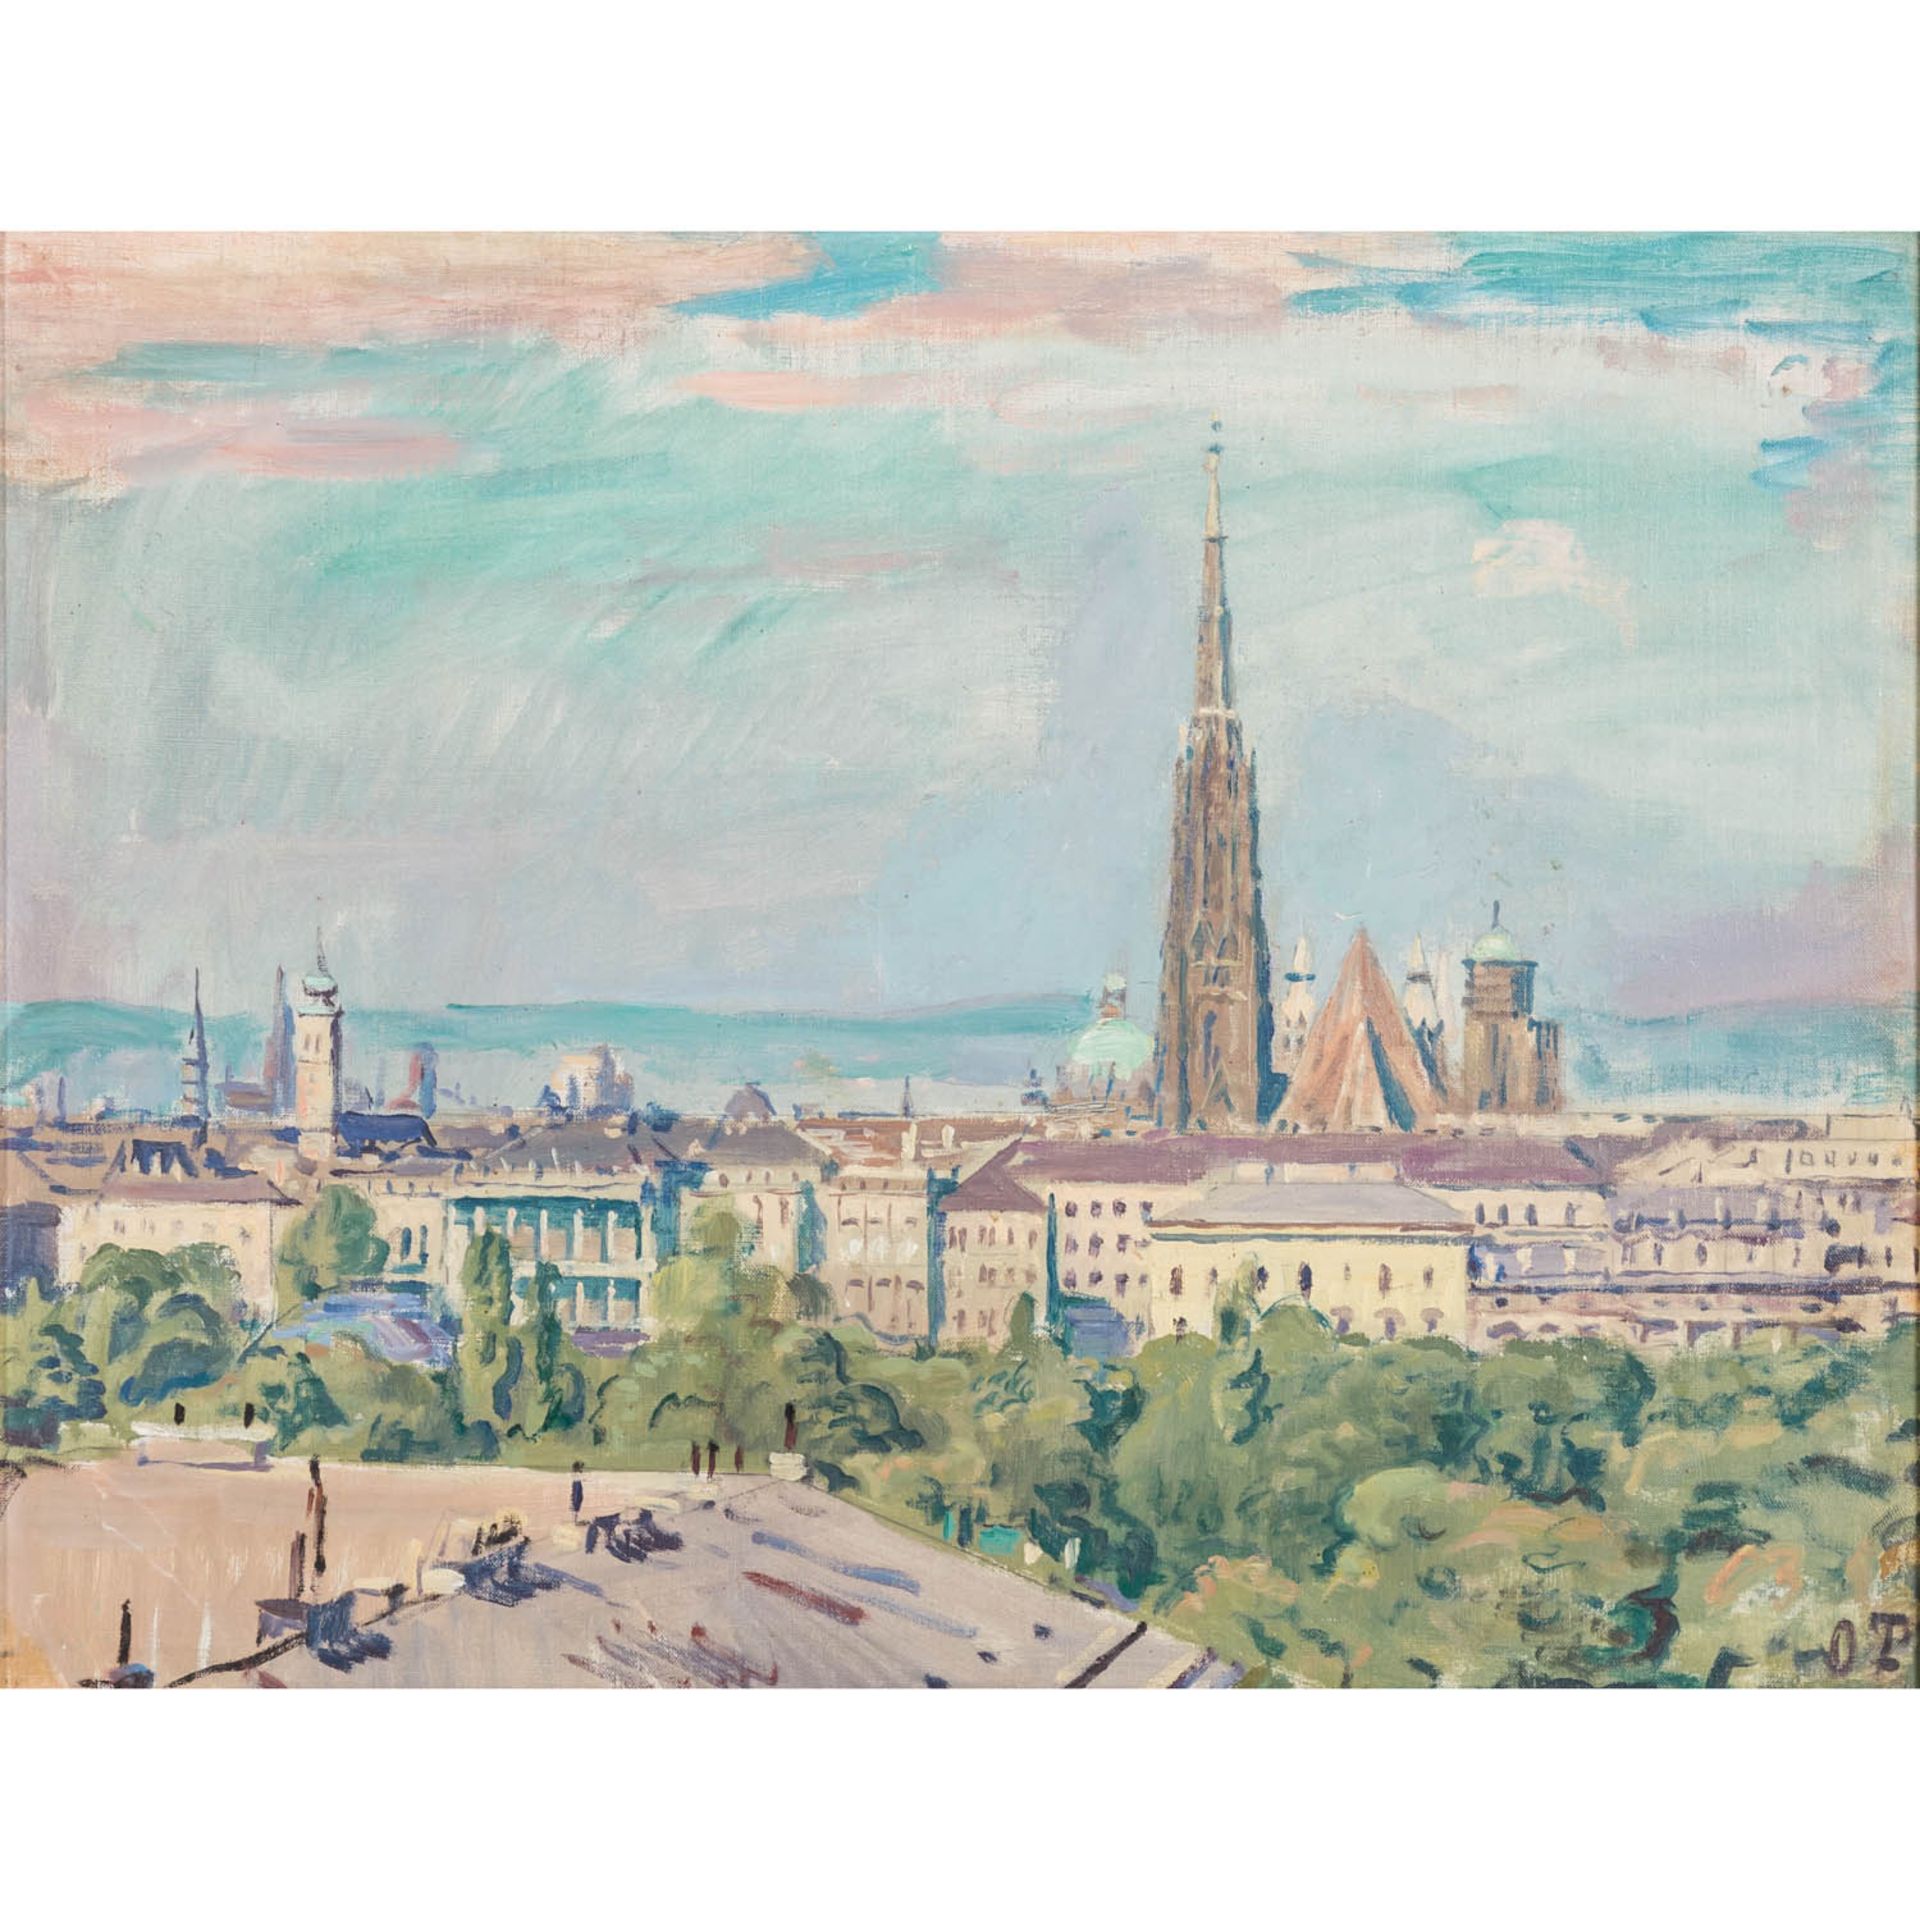 TRUBEL, OTTO (1885-1966), "Blick auf Wien",